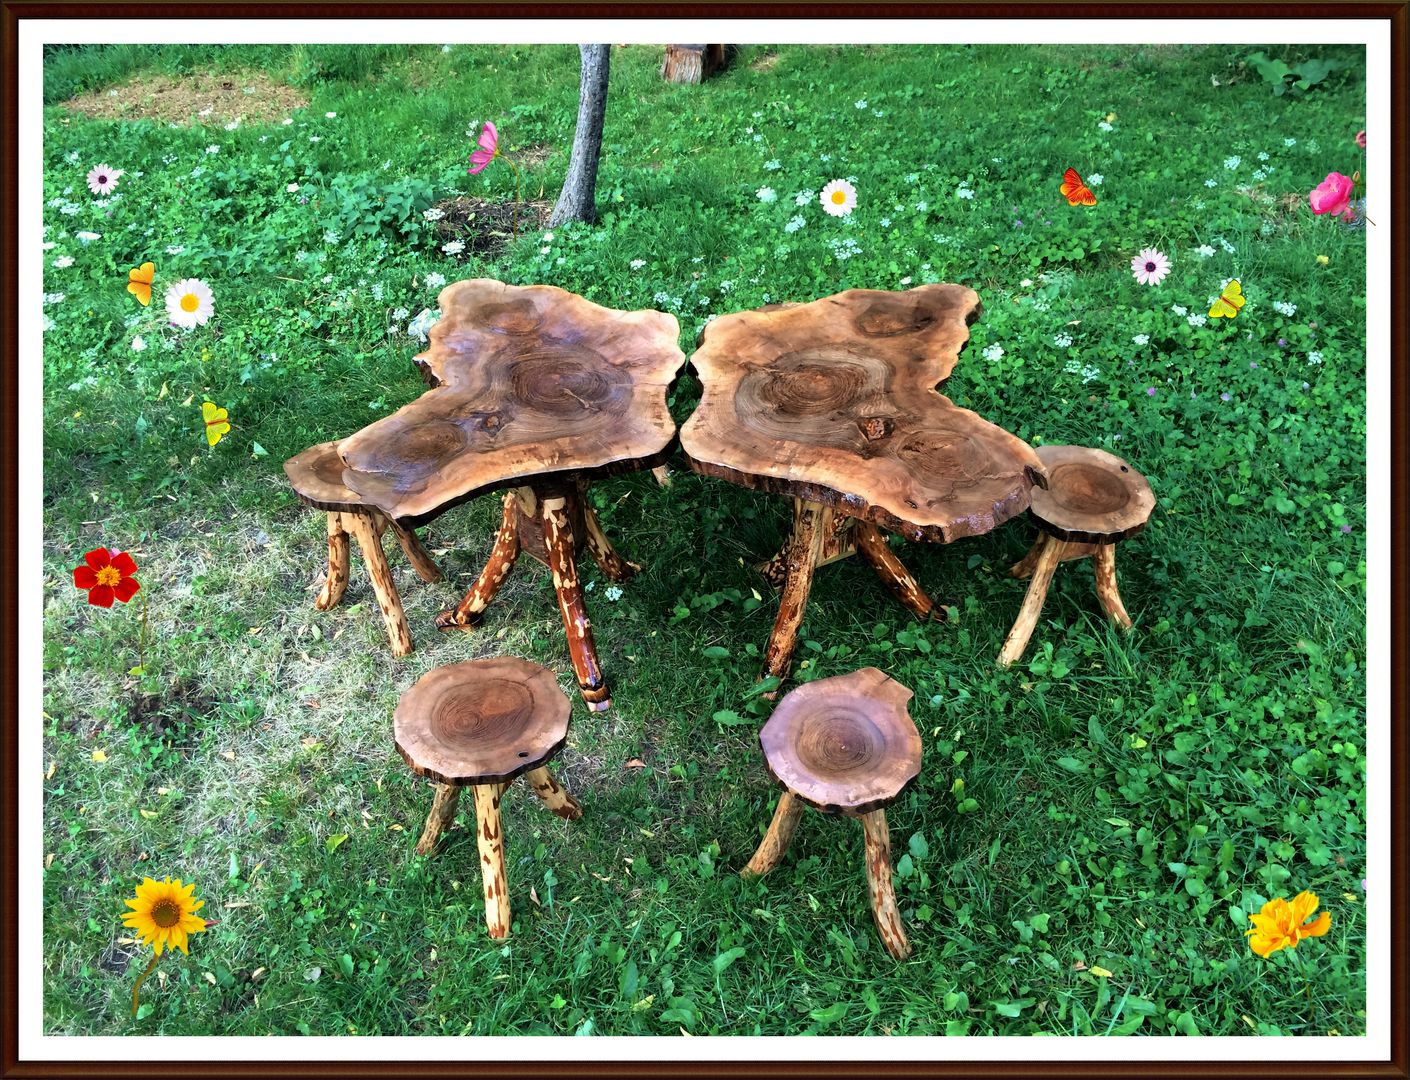 KELEBEĞİN KANATLARI, Coşkun Ahşap Dekorasyon Coşkun Ahşap Dekorasyon Taman Gaya Rustic Kayu Wood effect Furniture